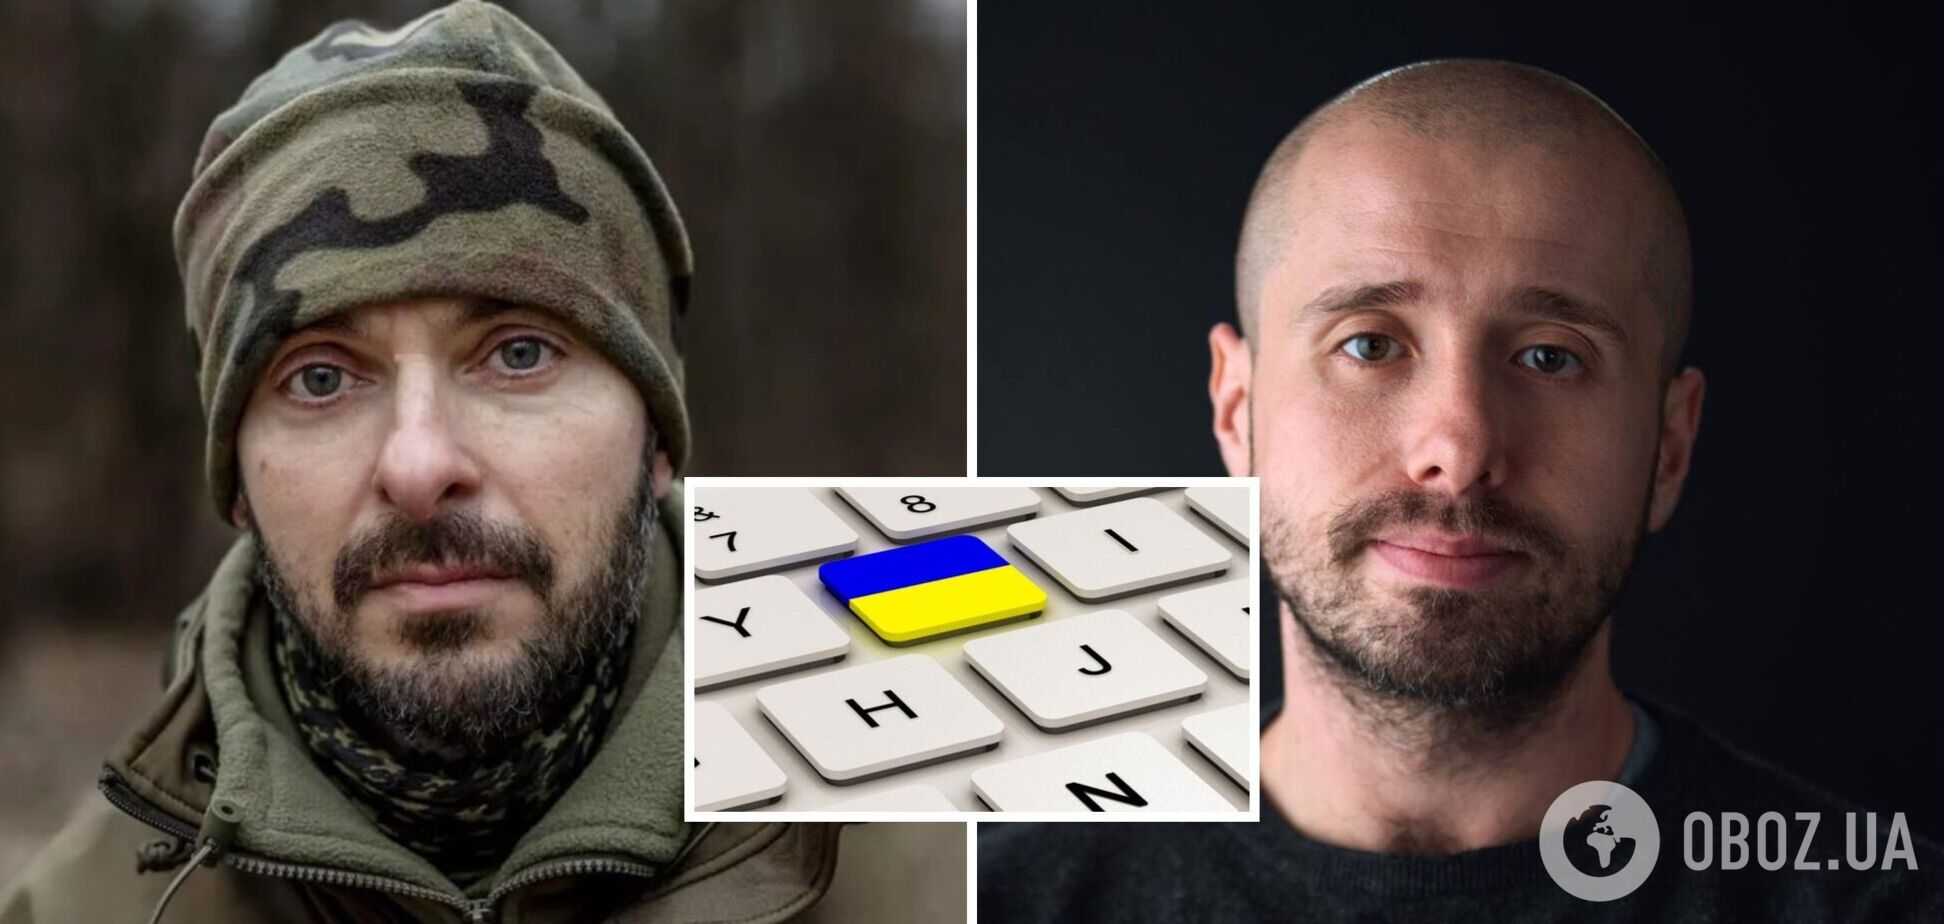 Назвал призыв воина говорить по-украински 'расколом': известный бизнесмен влип в громкий скандал, в сети возмущены